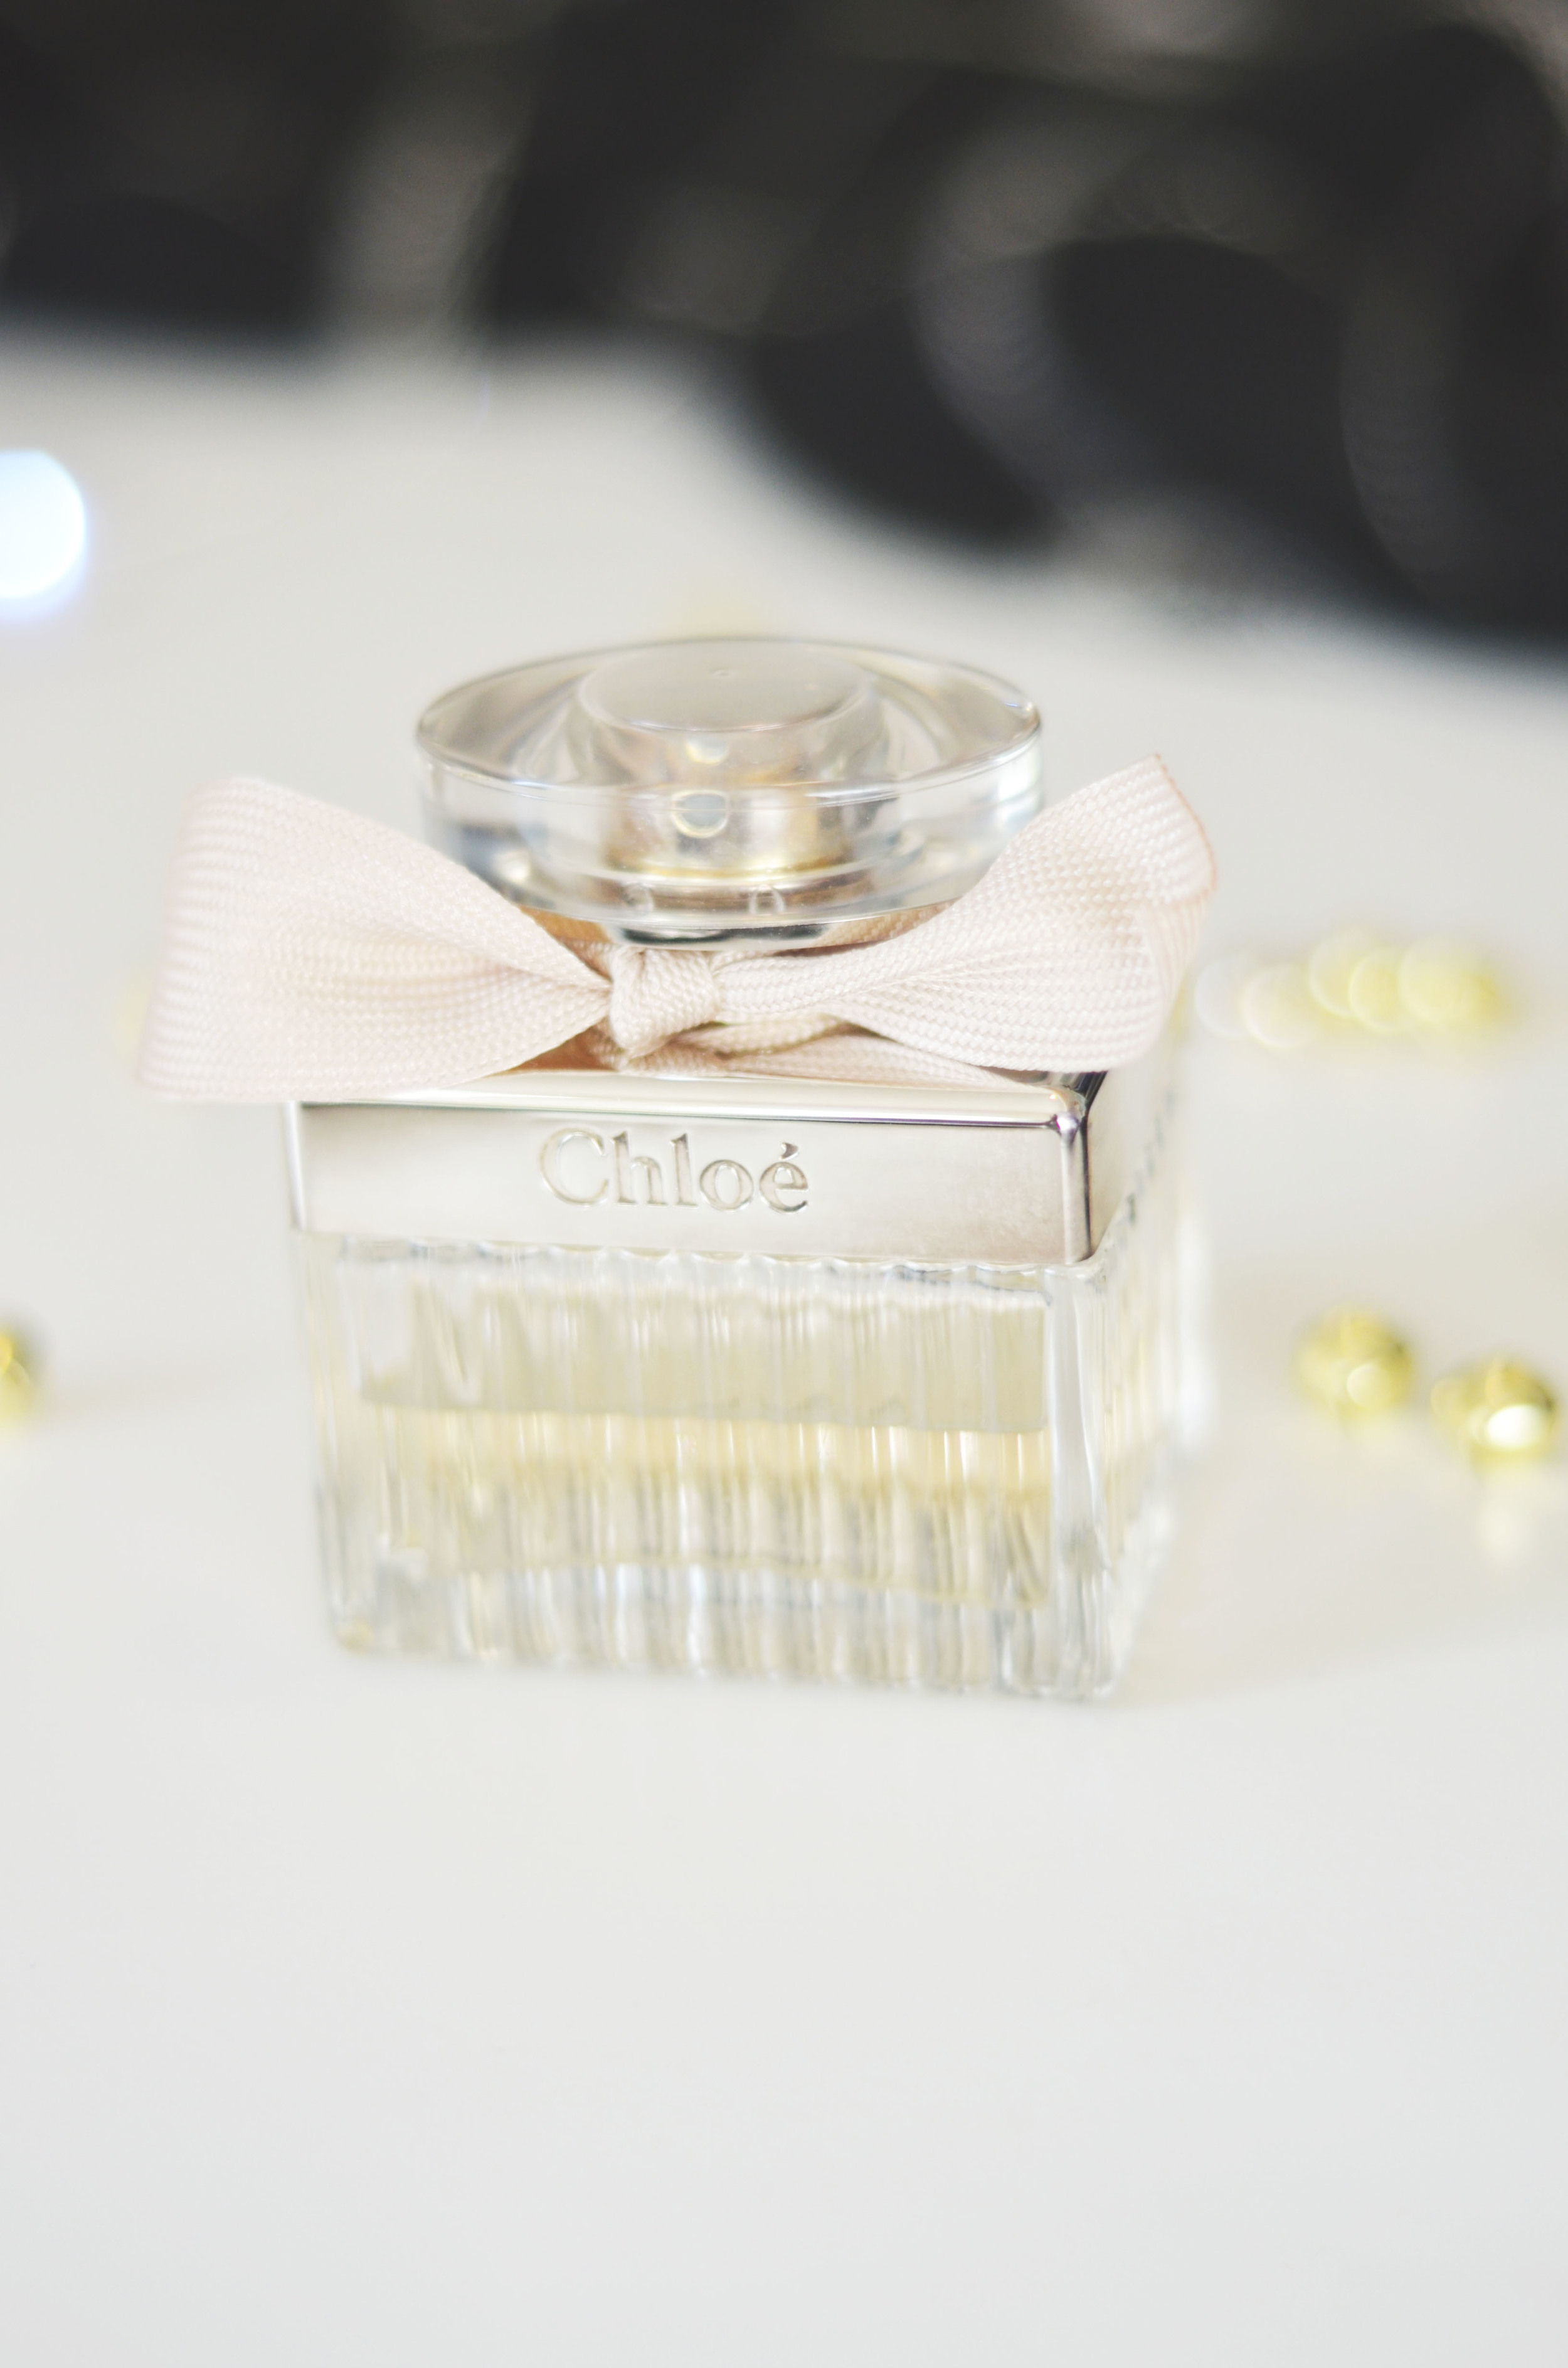 Chloe Eau de Parfum | Forever My Signature Scent — C H Y